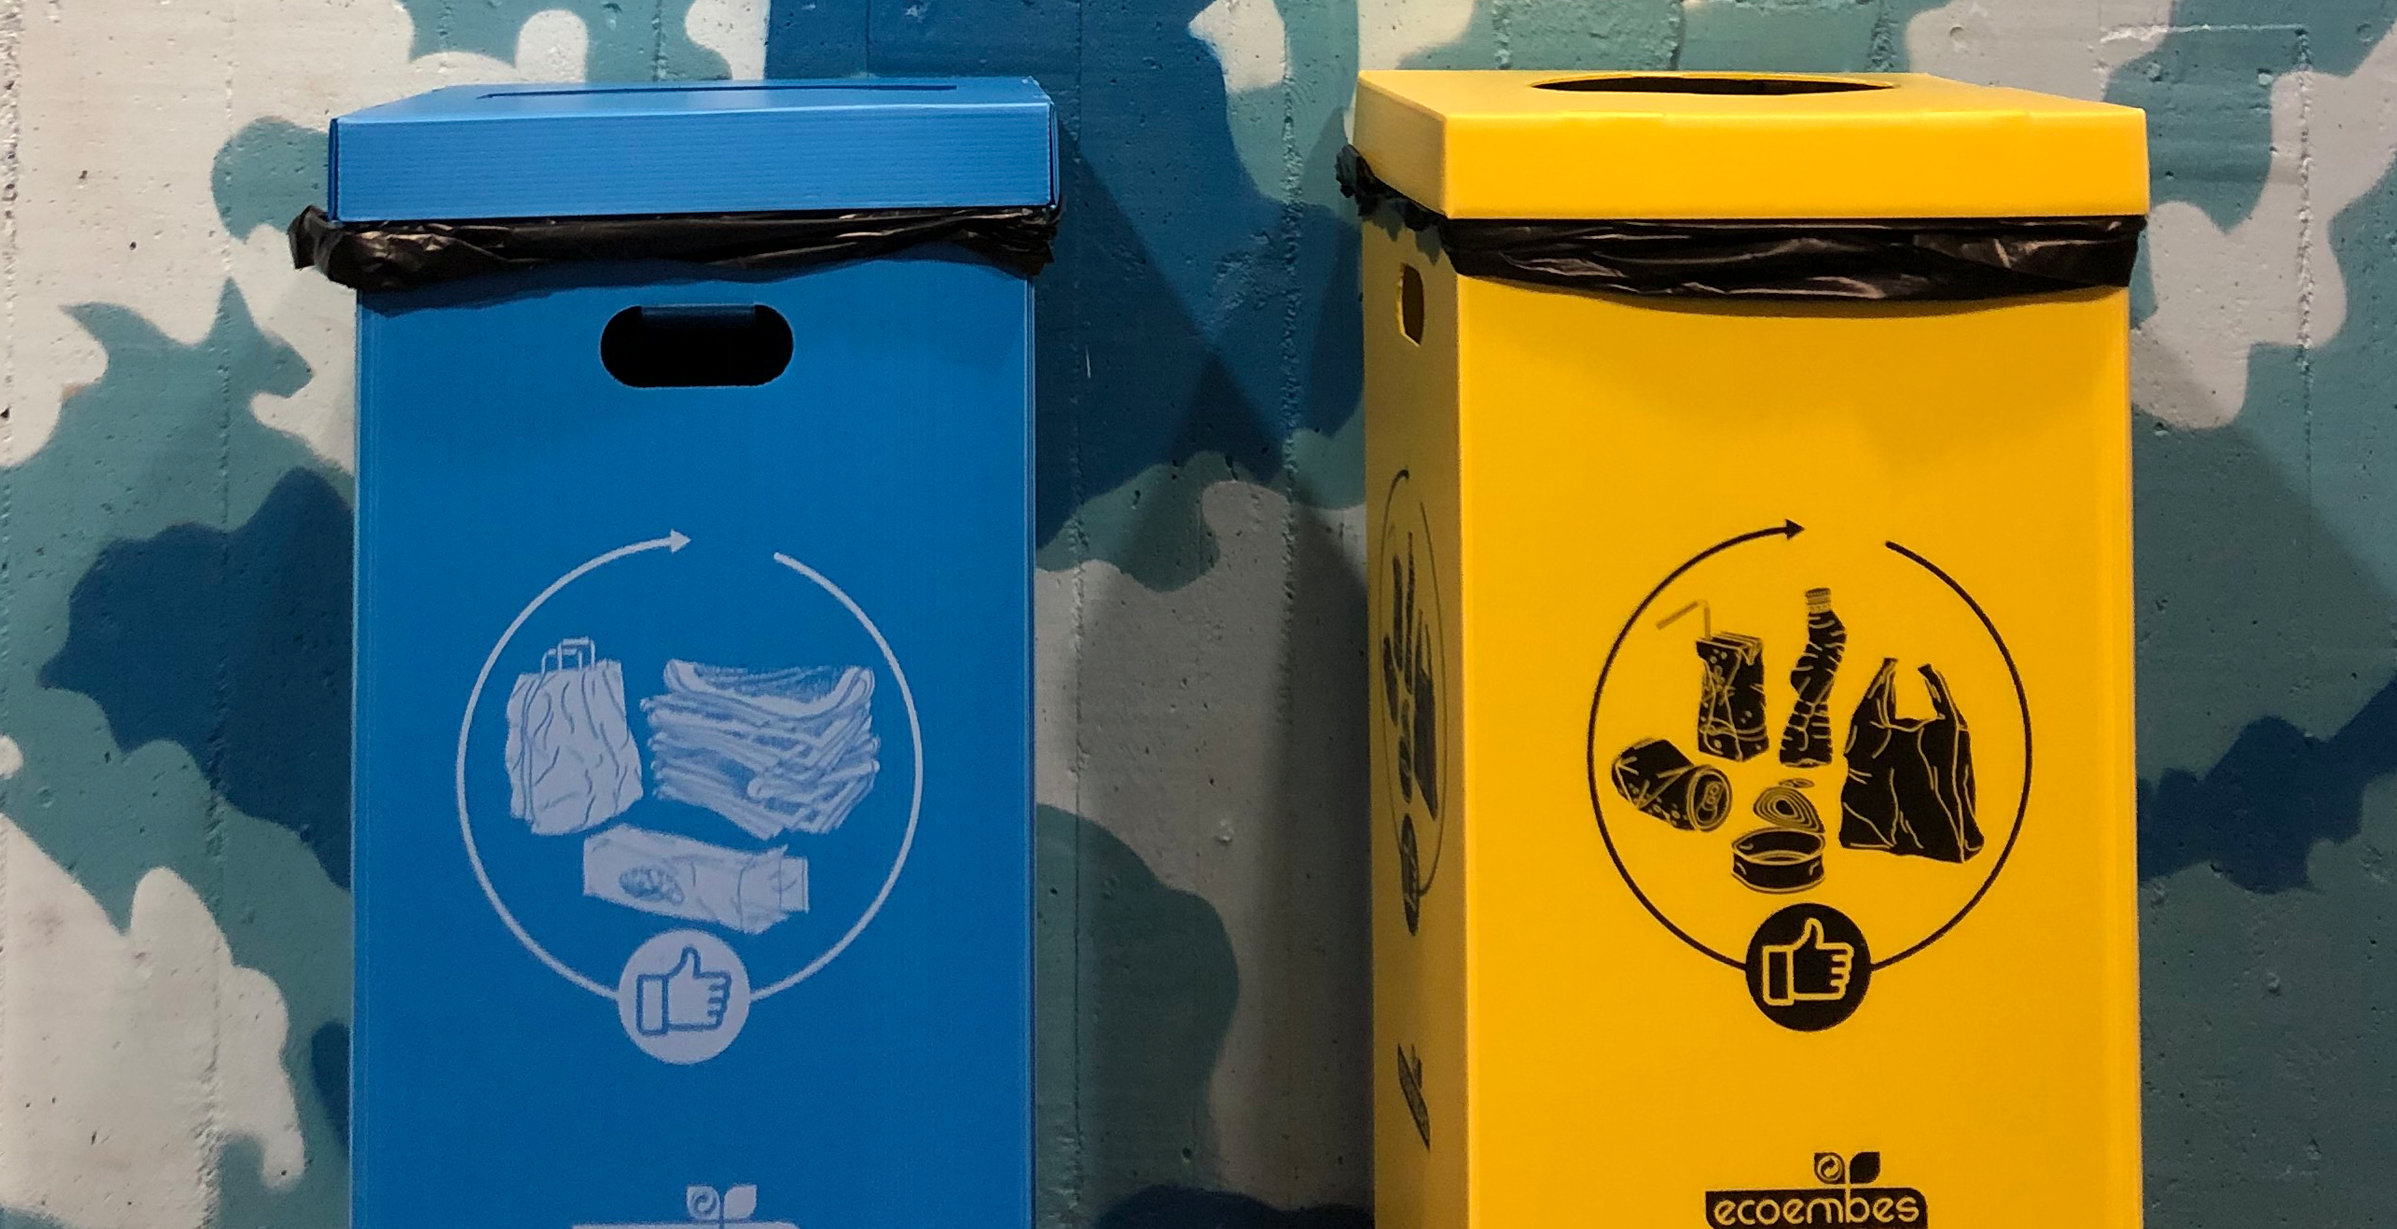 La Facultad de Ciencias de la Información instala sesenta papeleras de reciclaje